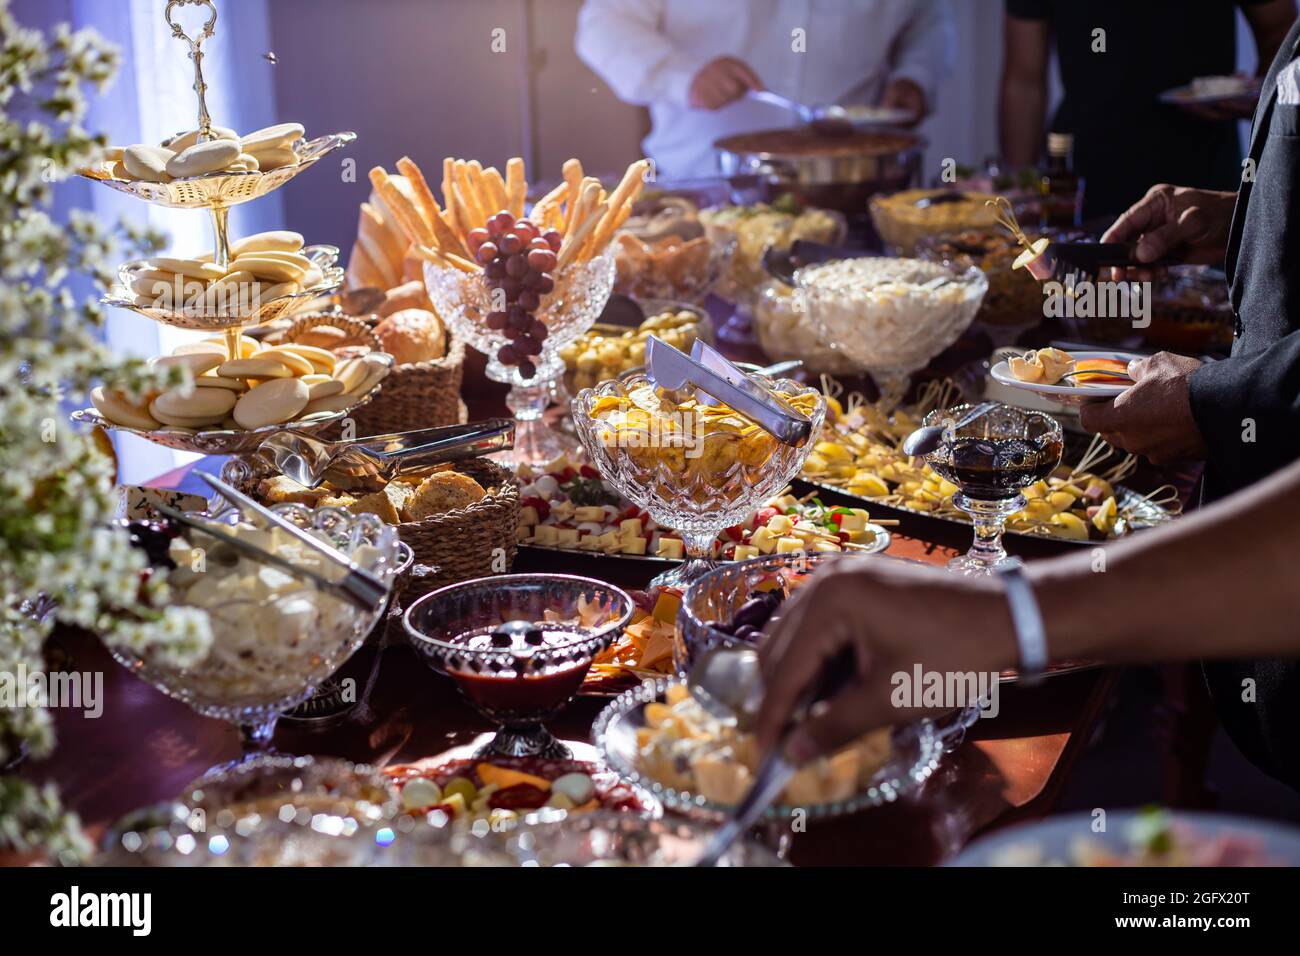 Détail d'une table de buffet de fête avec plusieurs options gastronomiques. Banque D'Images